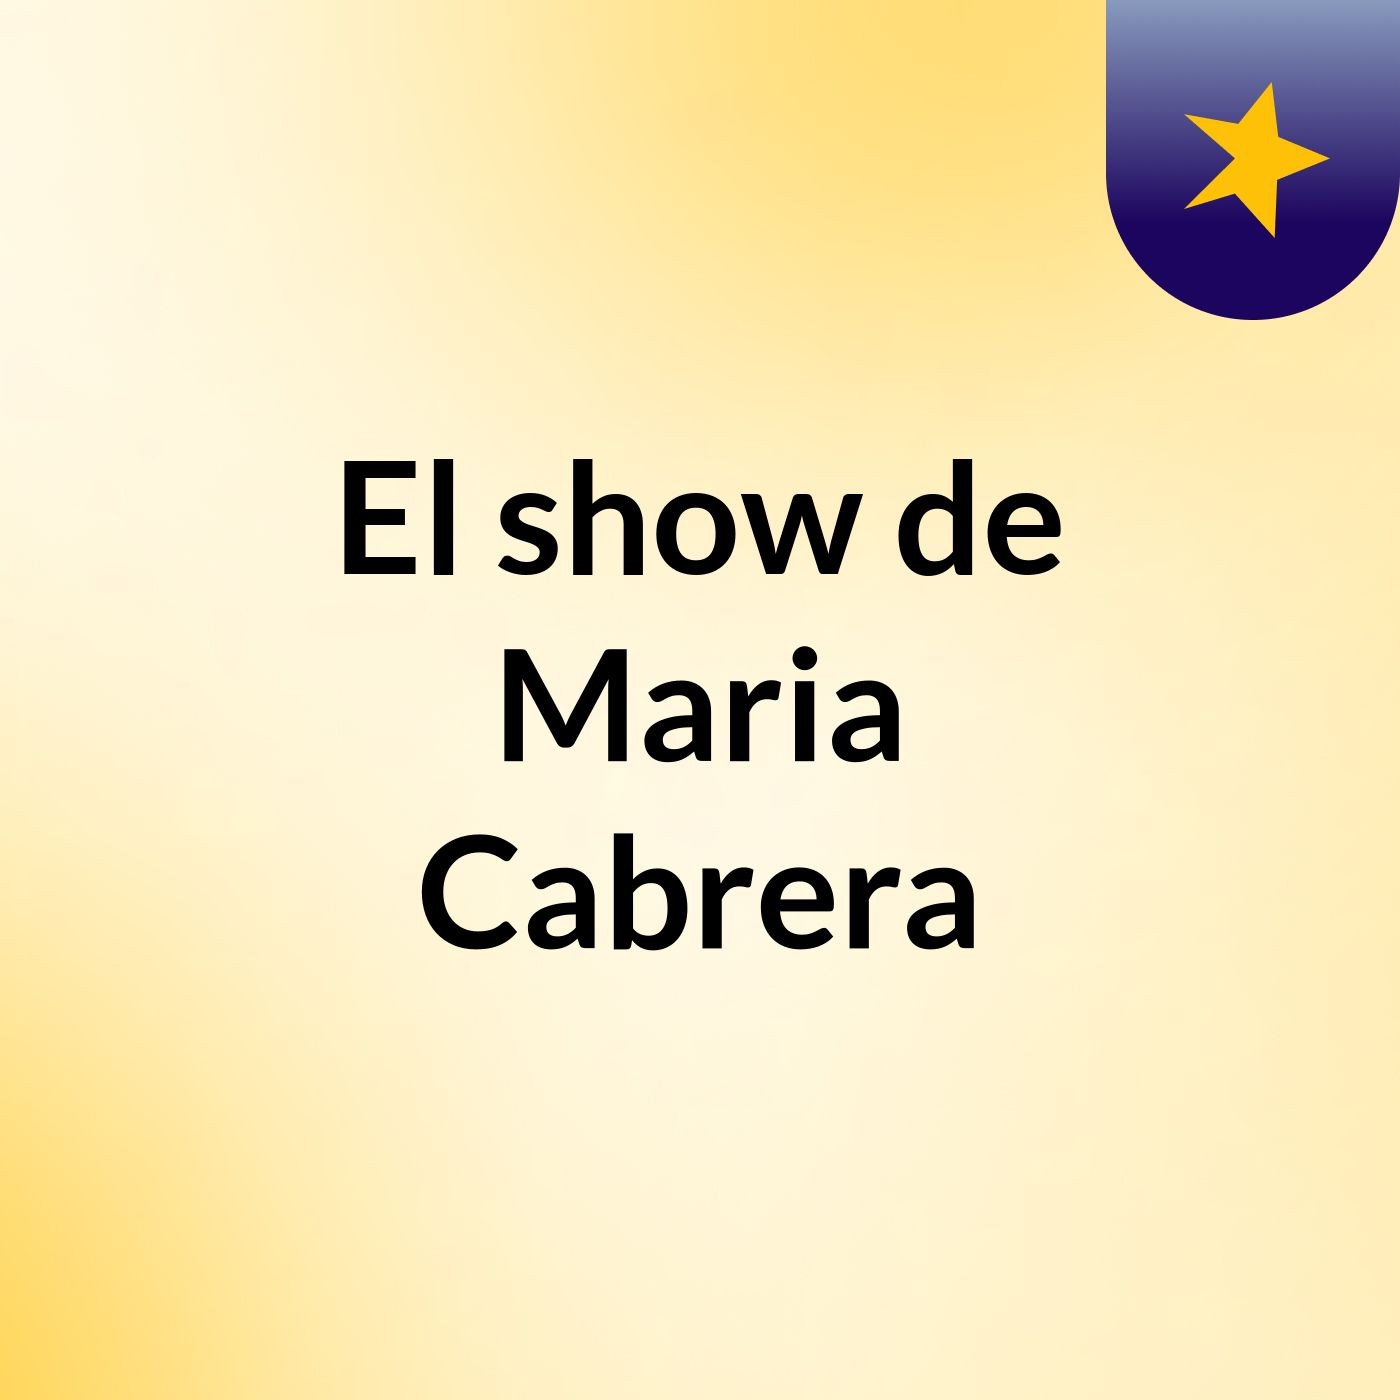 El show de Maria Cabrera